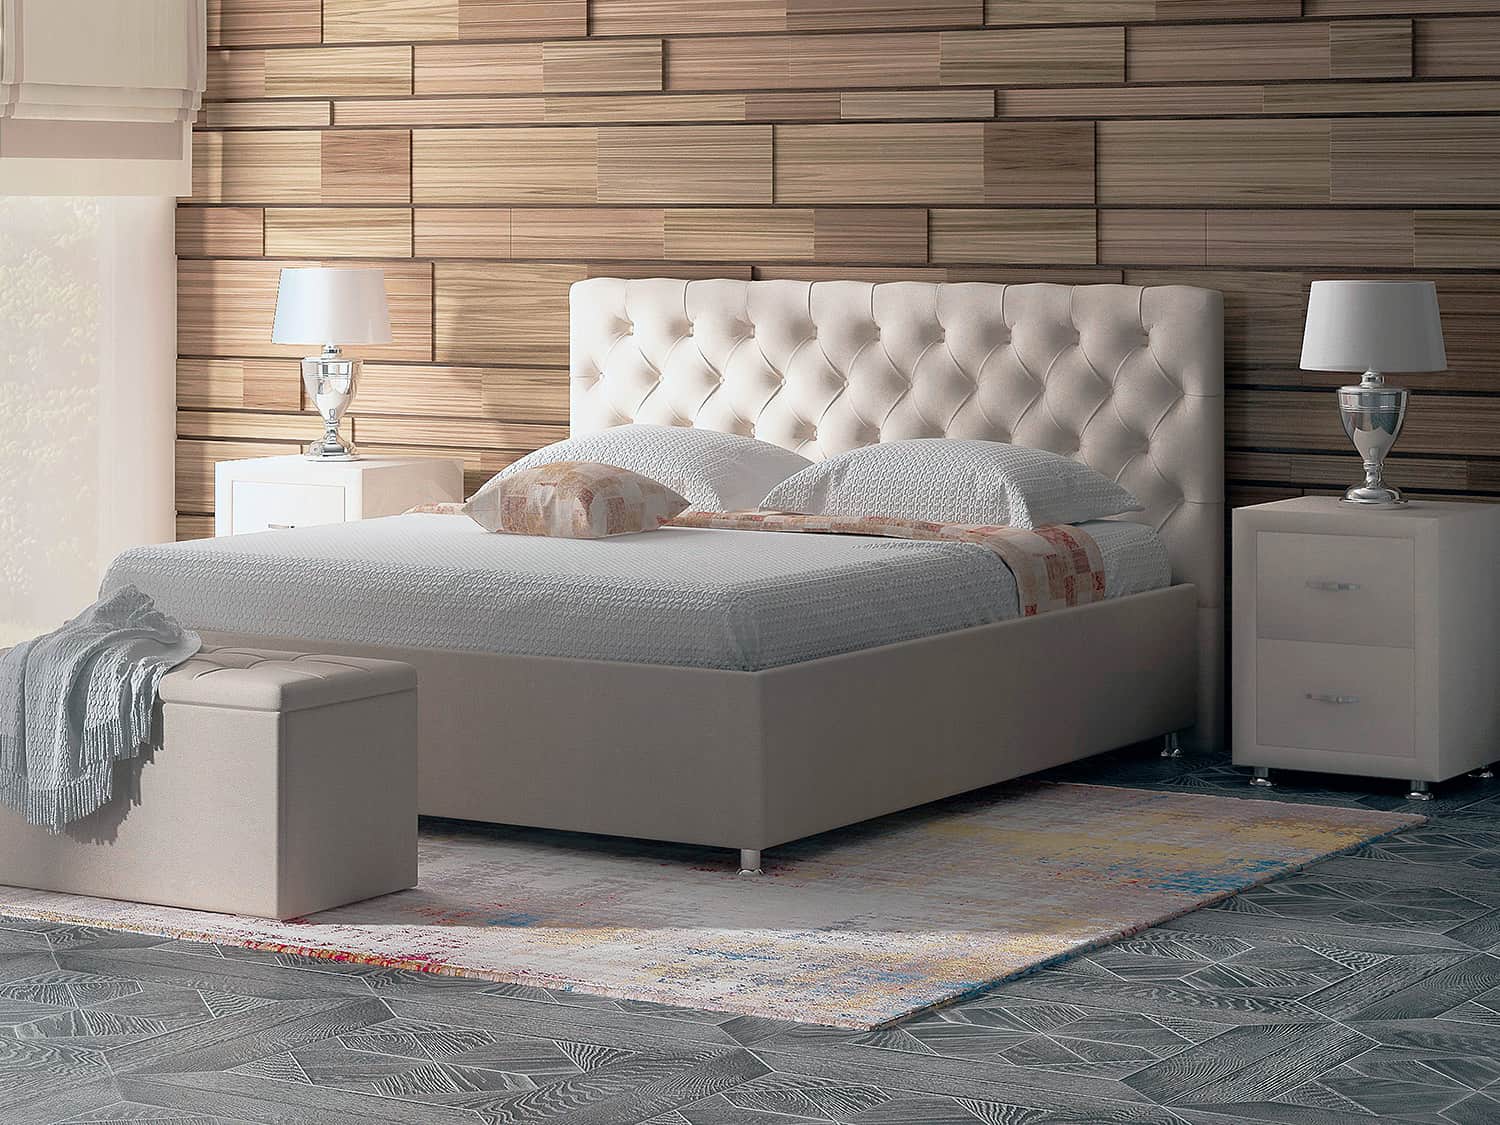 Кровать Parma - кровать с высоким изголовьем и каретной стяжкой